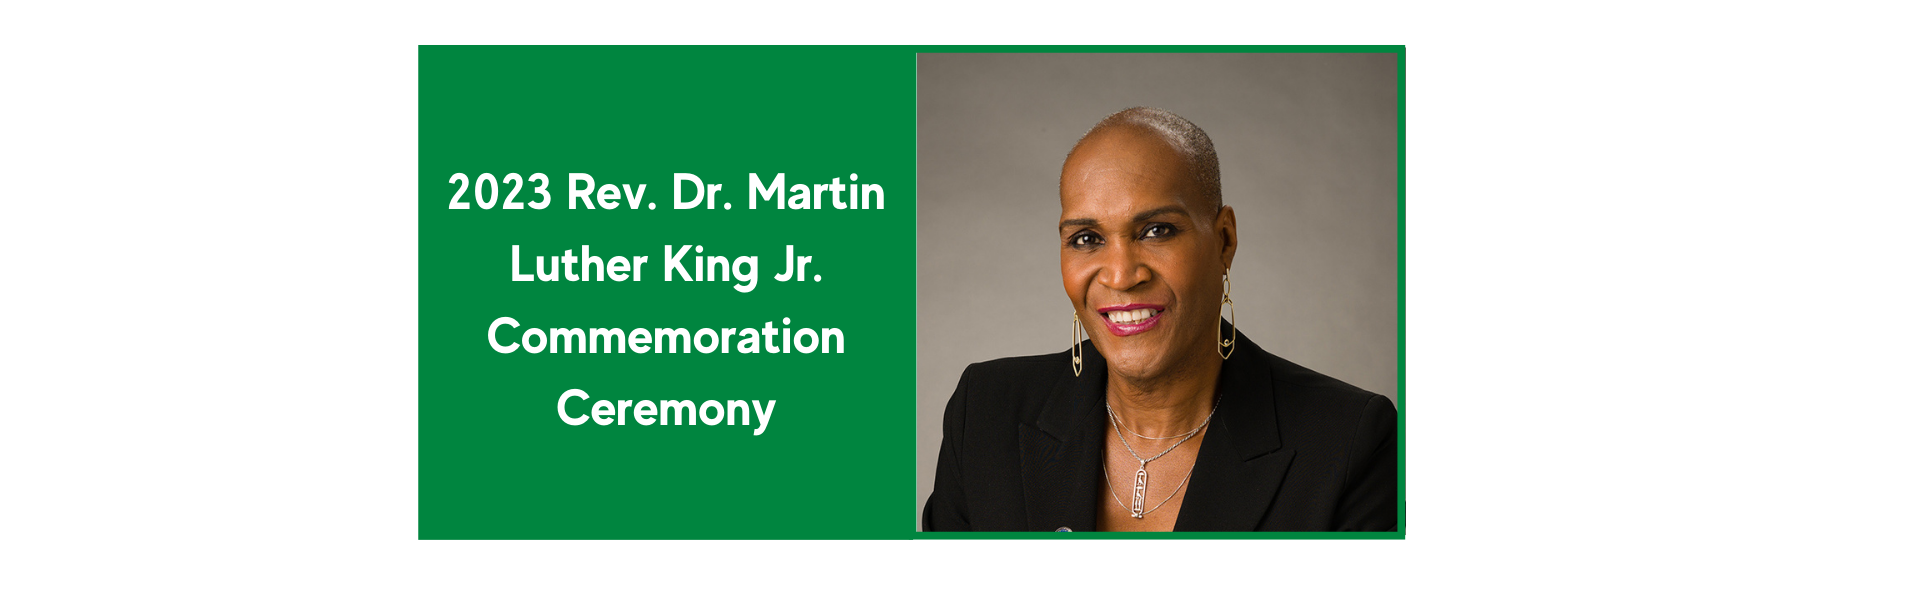 2023-Rev.-Dr.-Martin-Luther-King-Jr.-Commemoration-Ceremony.png